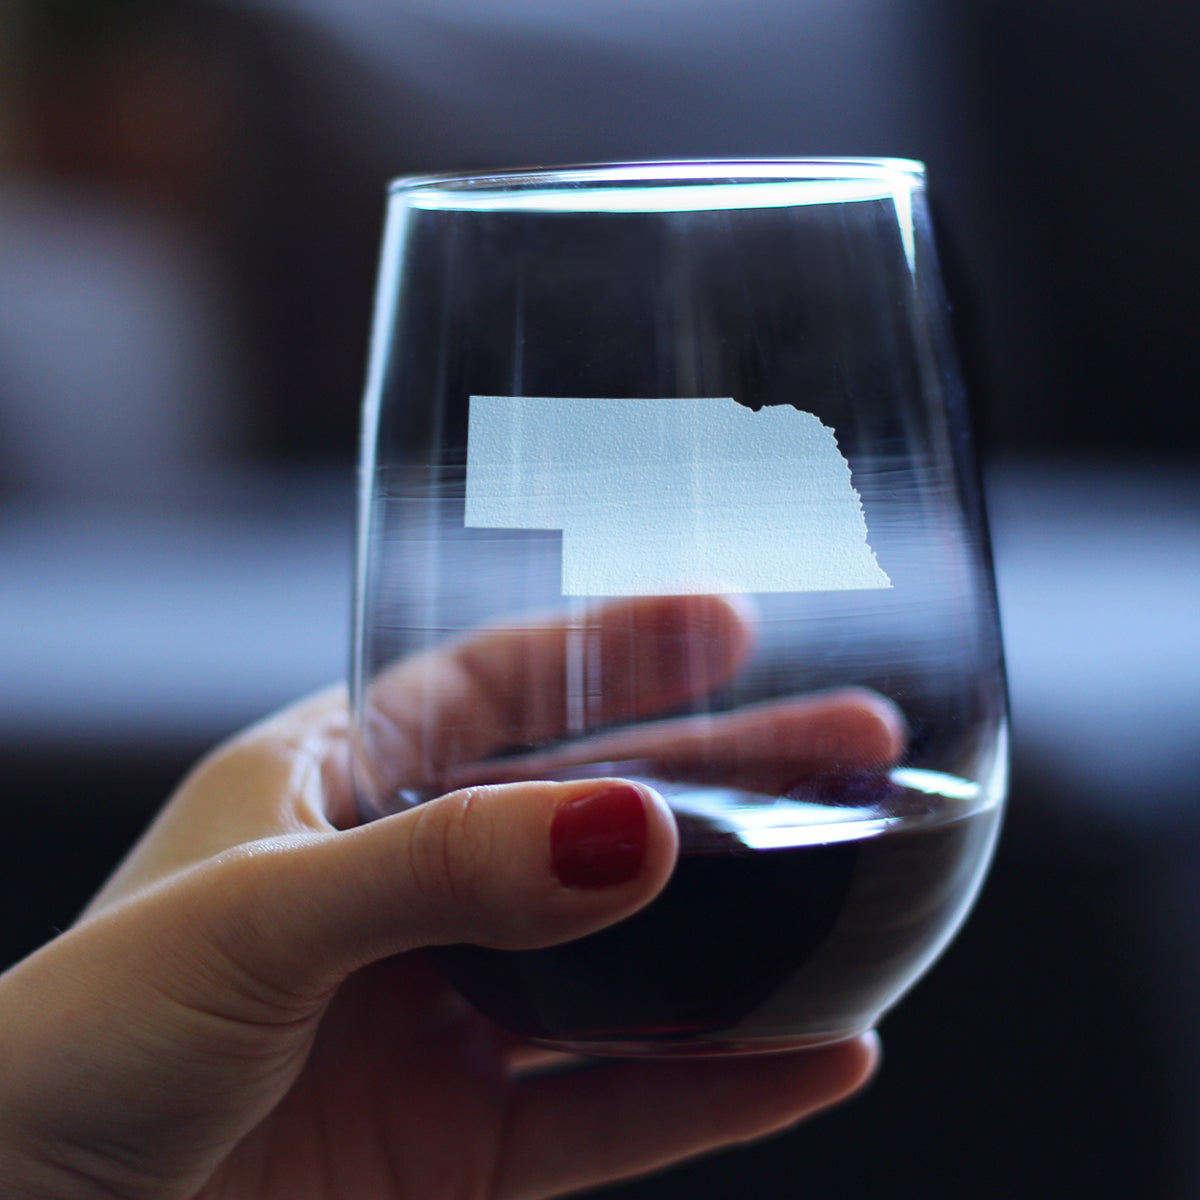 Nebraska State Outline Stemless Wine Glass - State Themed Drinking Decor and Gifts for Nebraskan Women &amp; Men - Large 17 Oz Glasses